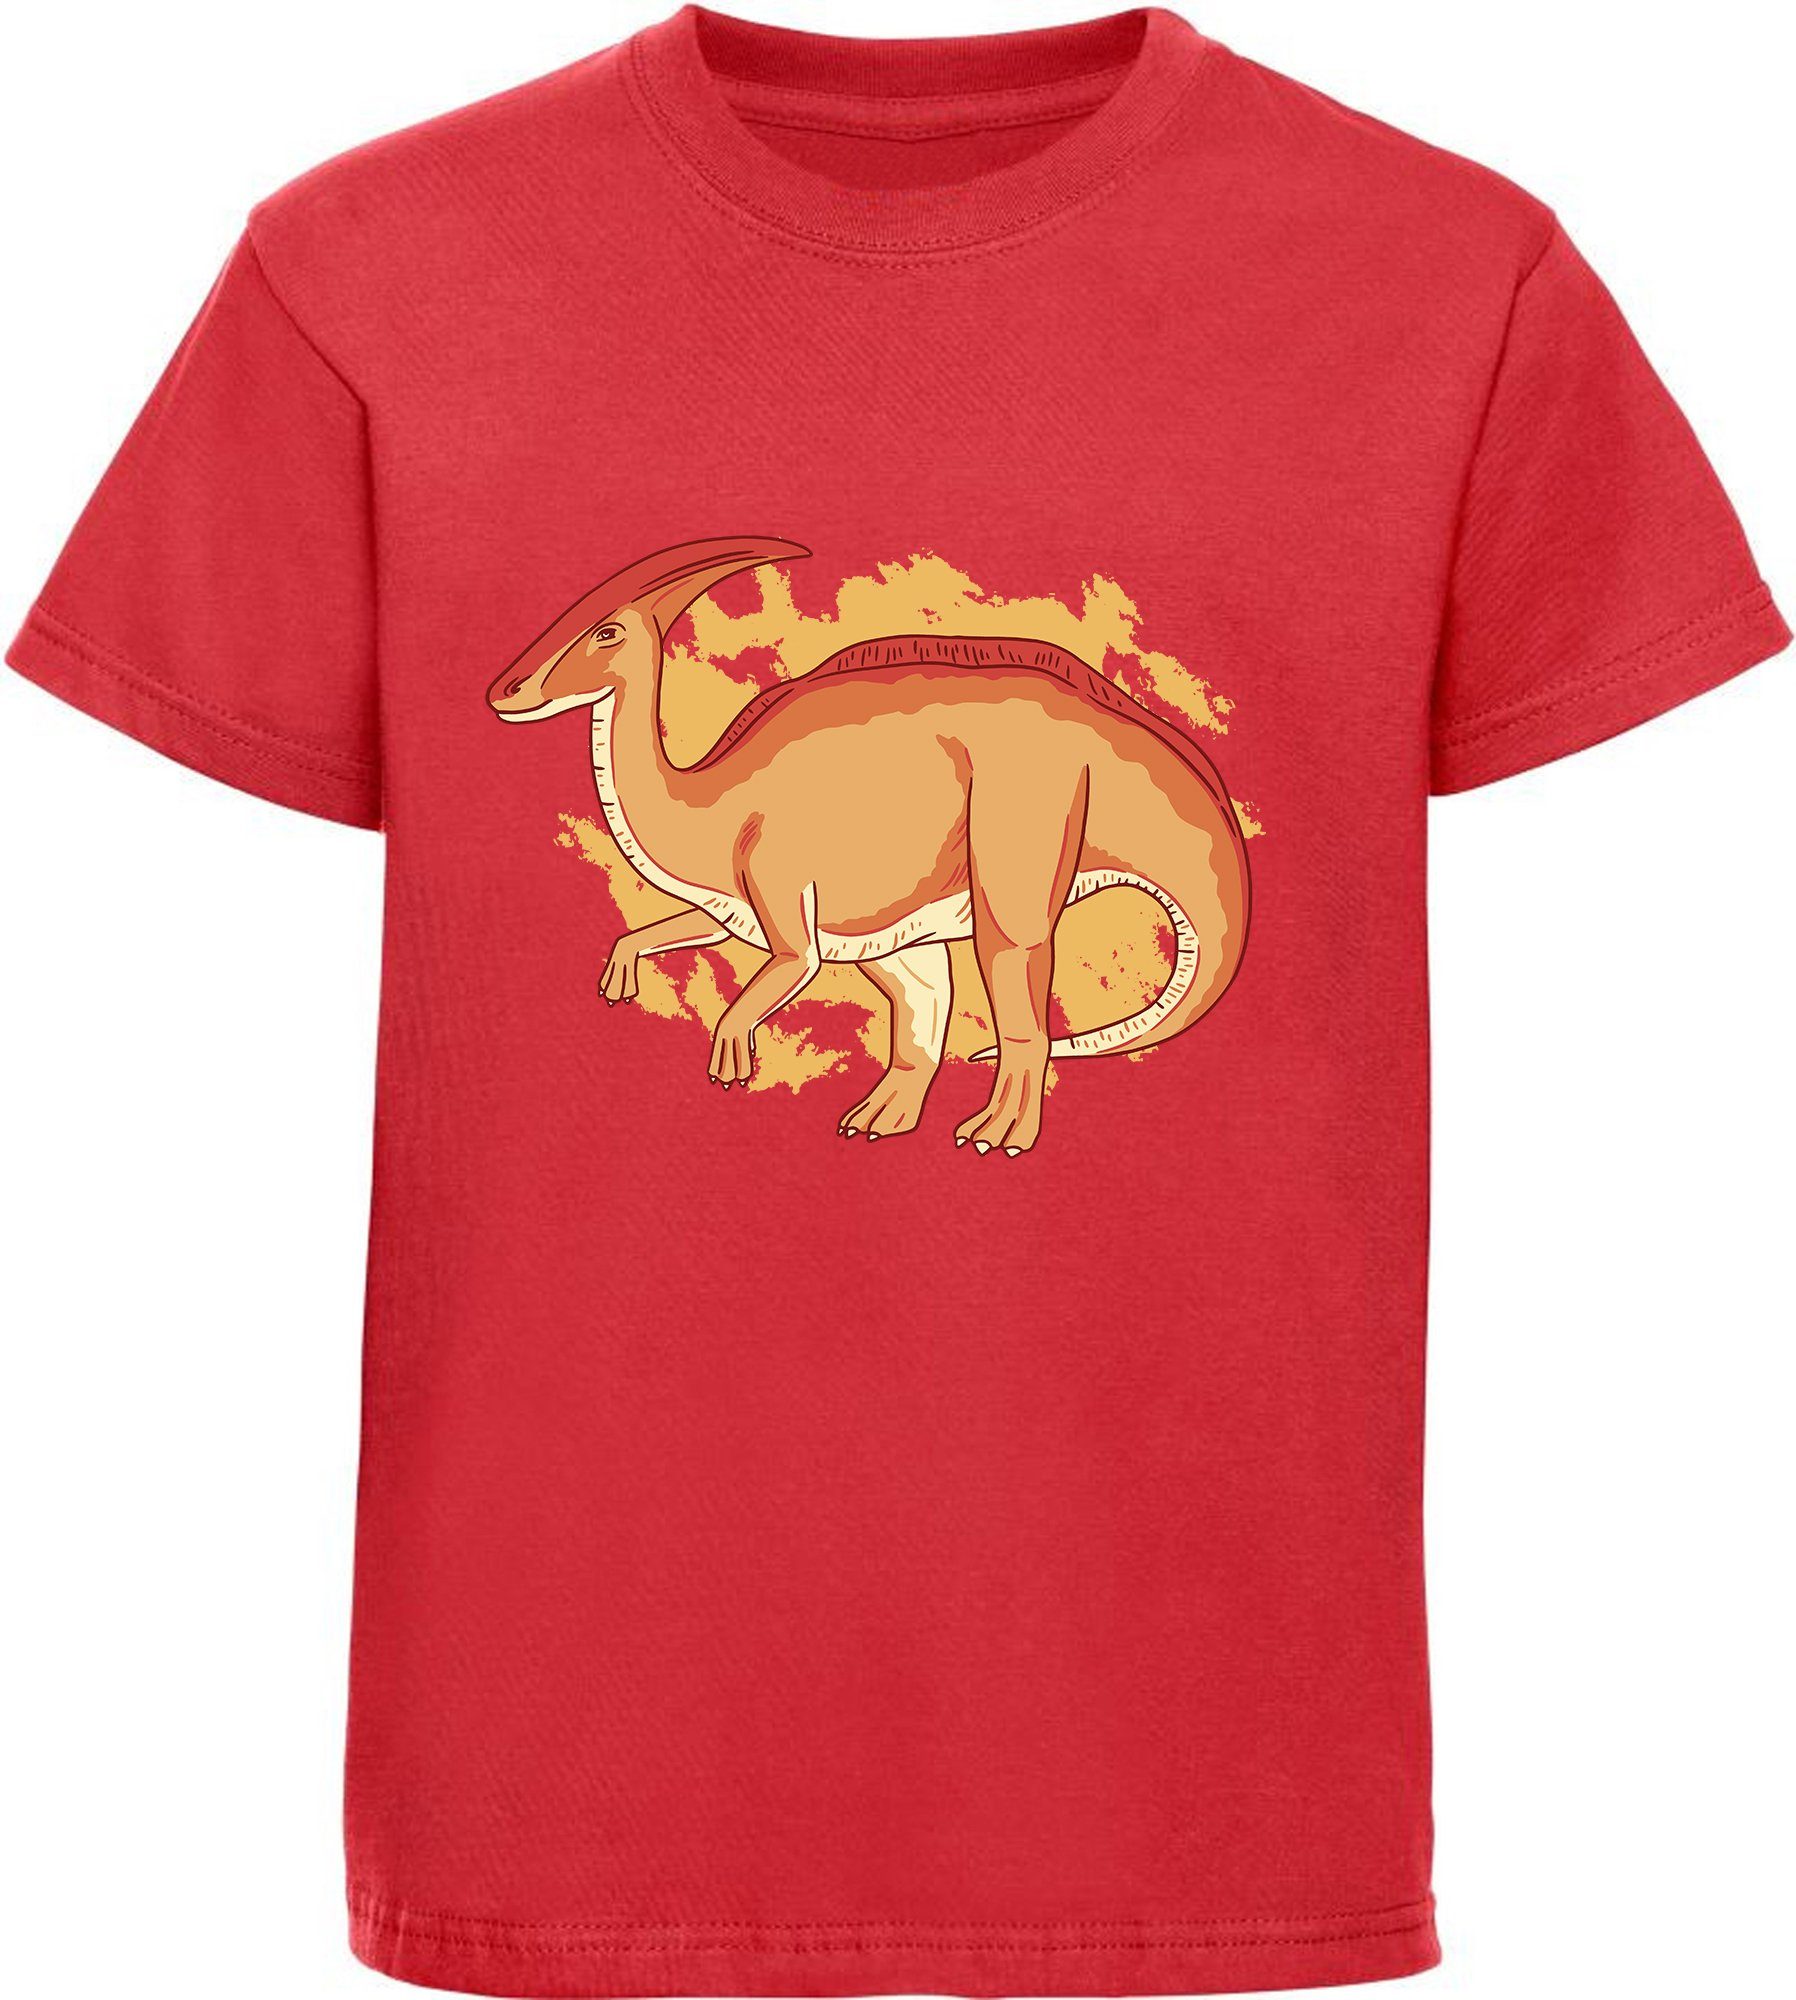 MyDesign24 Print-Shirt bedrucktes Kinder T-Shirt mit Parasaurolophus Baumwollshirt mit Dino, schwarz, weiß, rot, blau, i86